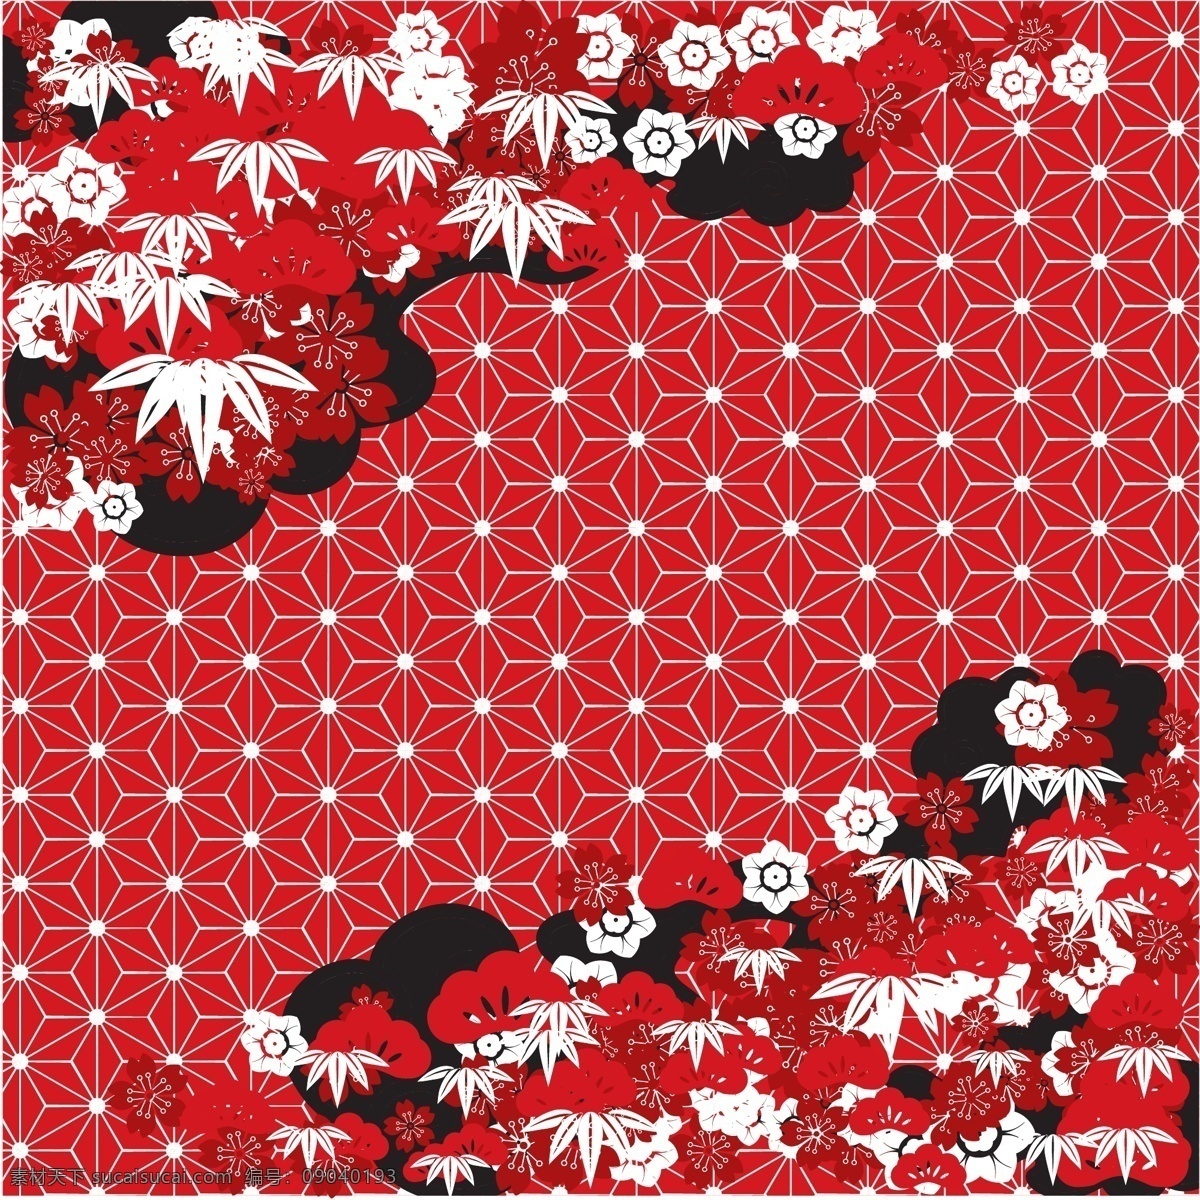 中国 吉祥 寓意 红色 植物 矢量 背景 底纹 白色 祥云 花朵 松柏 小花 矢量素材 源文件 平面设计素材 节日装饰